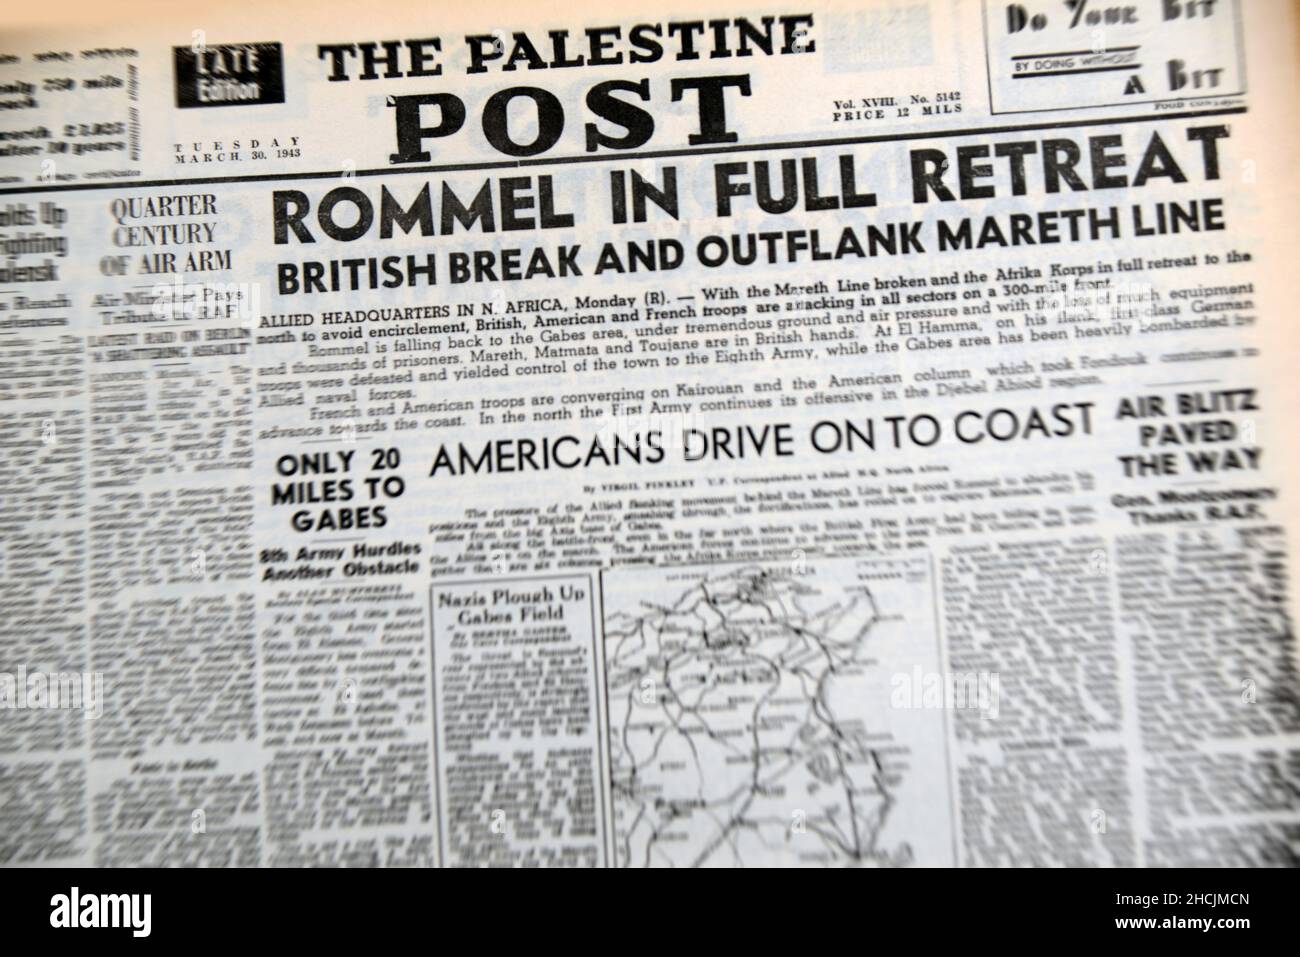 Schlagzeile aus der israelischen Zeitung mit einem historischen Ereignis - Rommel in vollem Rückzug, 1943 Stockfoto